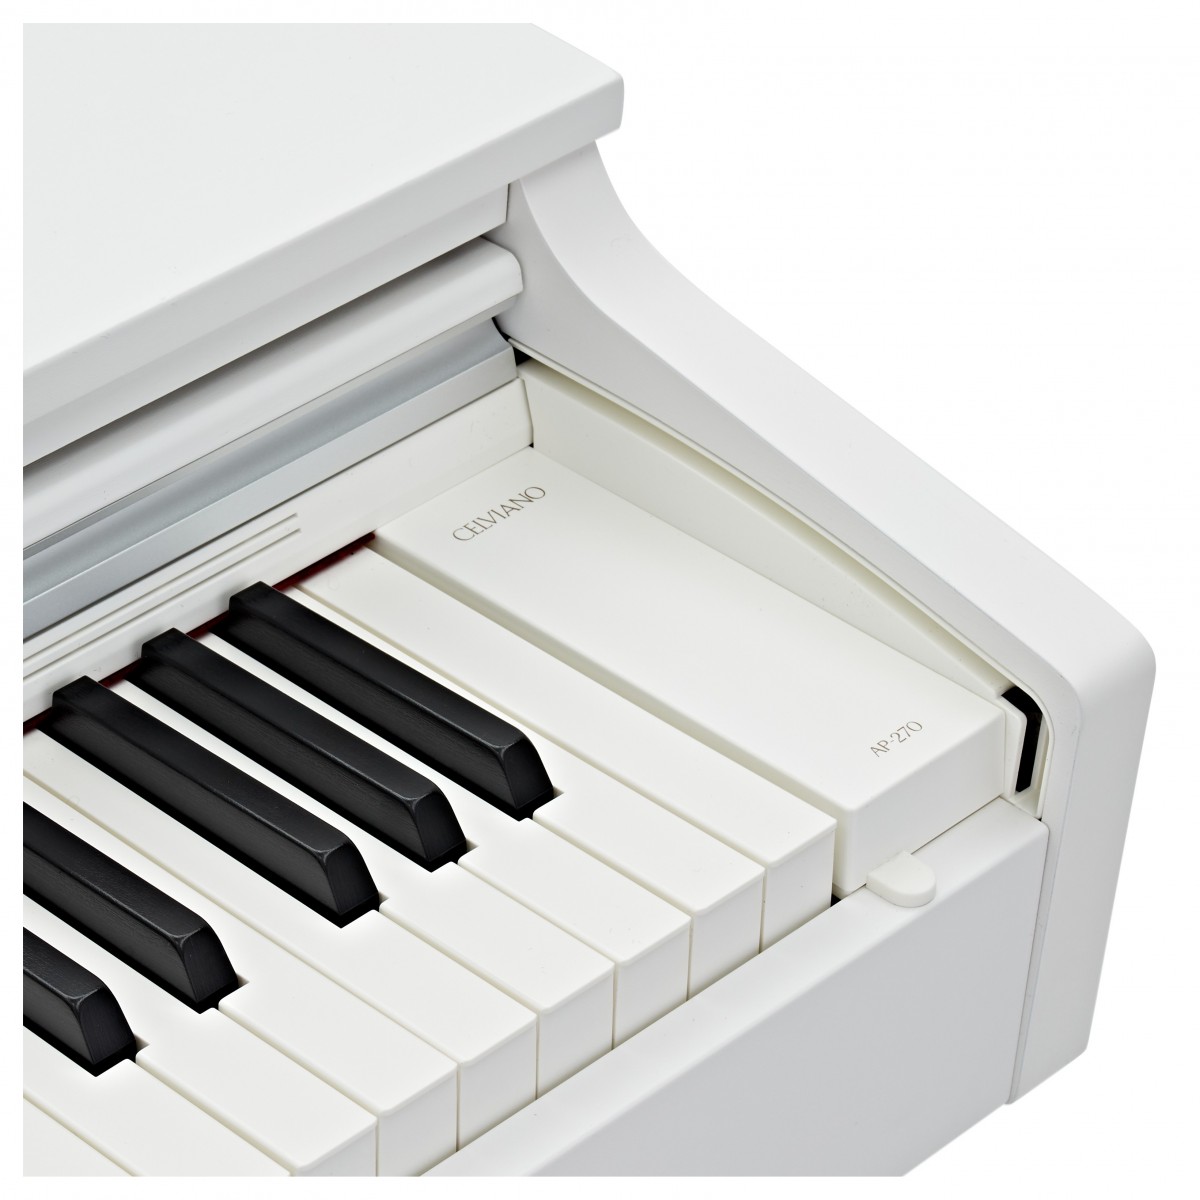 CASIO CELVIANO AP270 WE WHITE PIANOFORTE DIGITALE 88 TASTI COLORE BIANCO 5